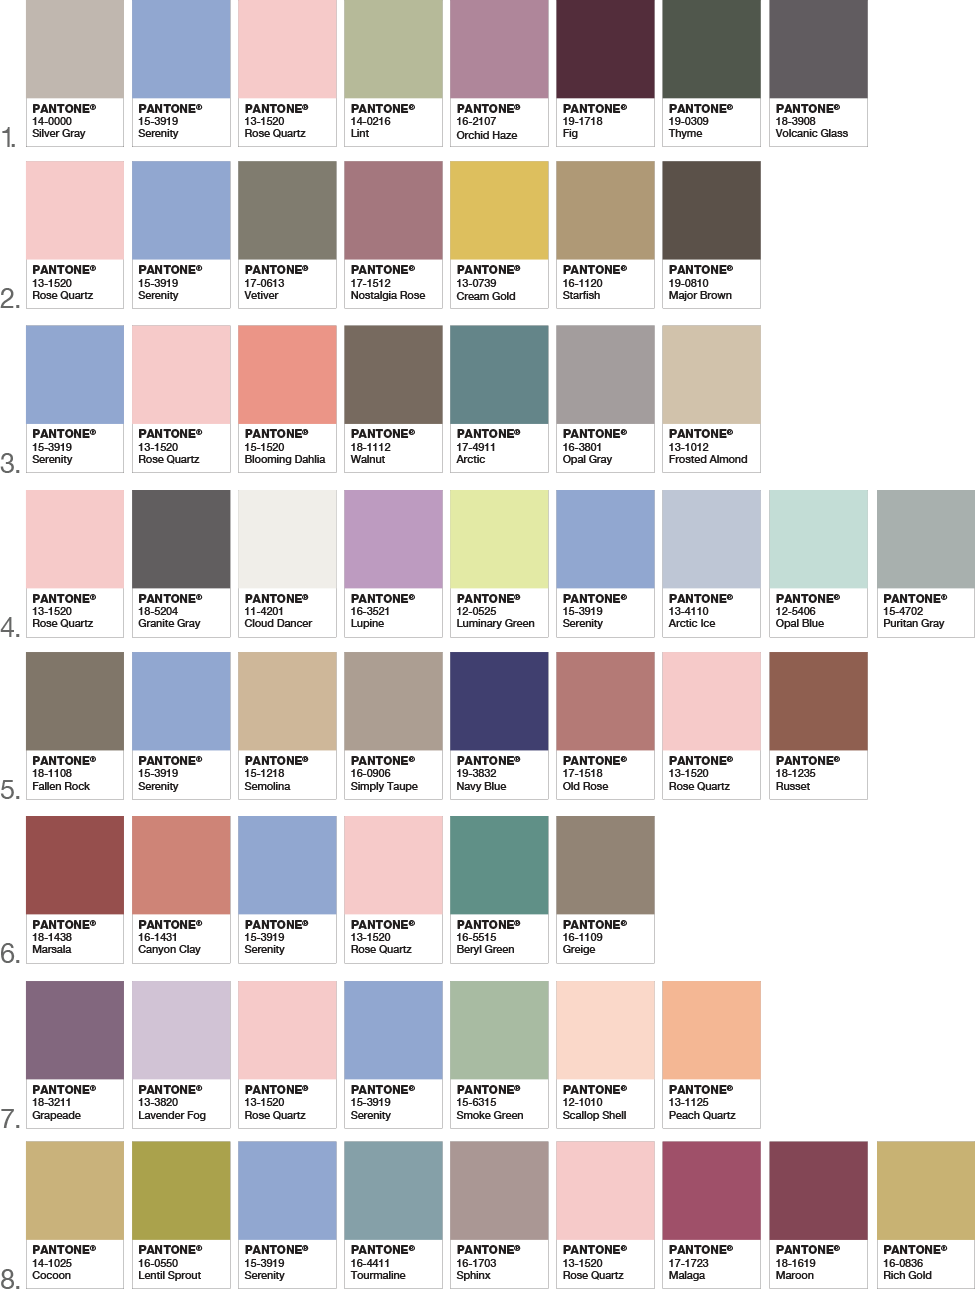 Pantone Colors of 2016